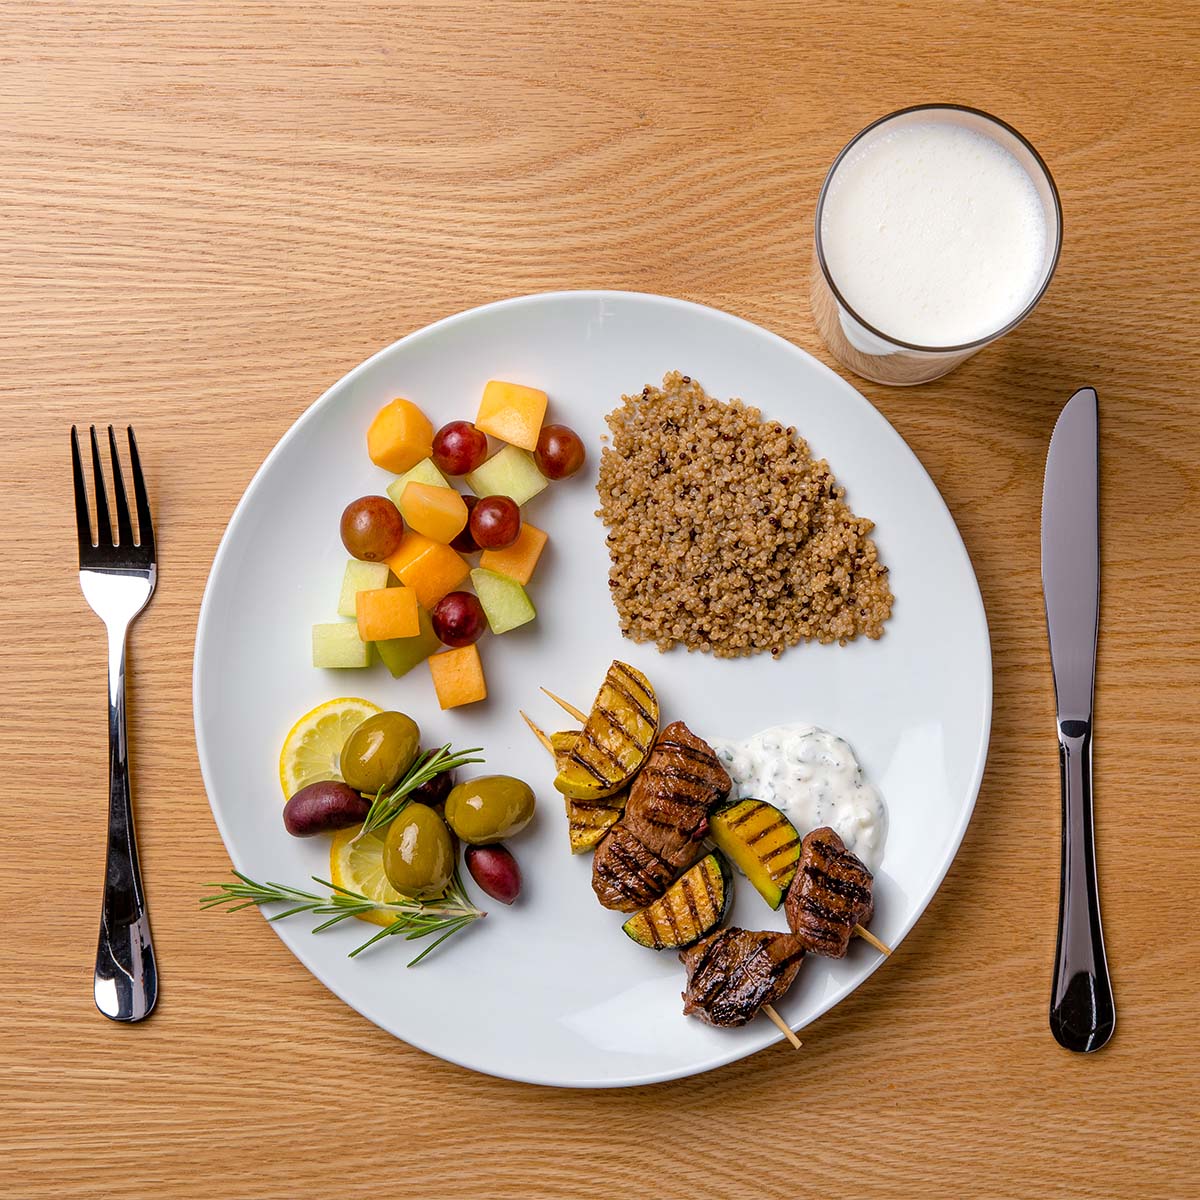 healthy plate food balanced diet dairy milk grains veggies